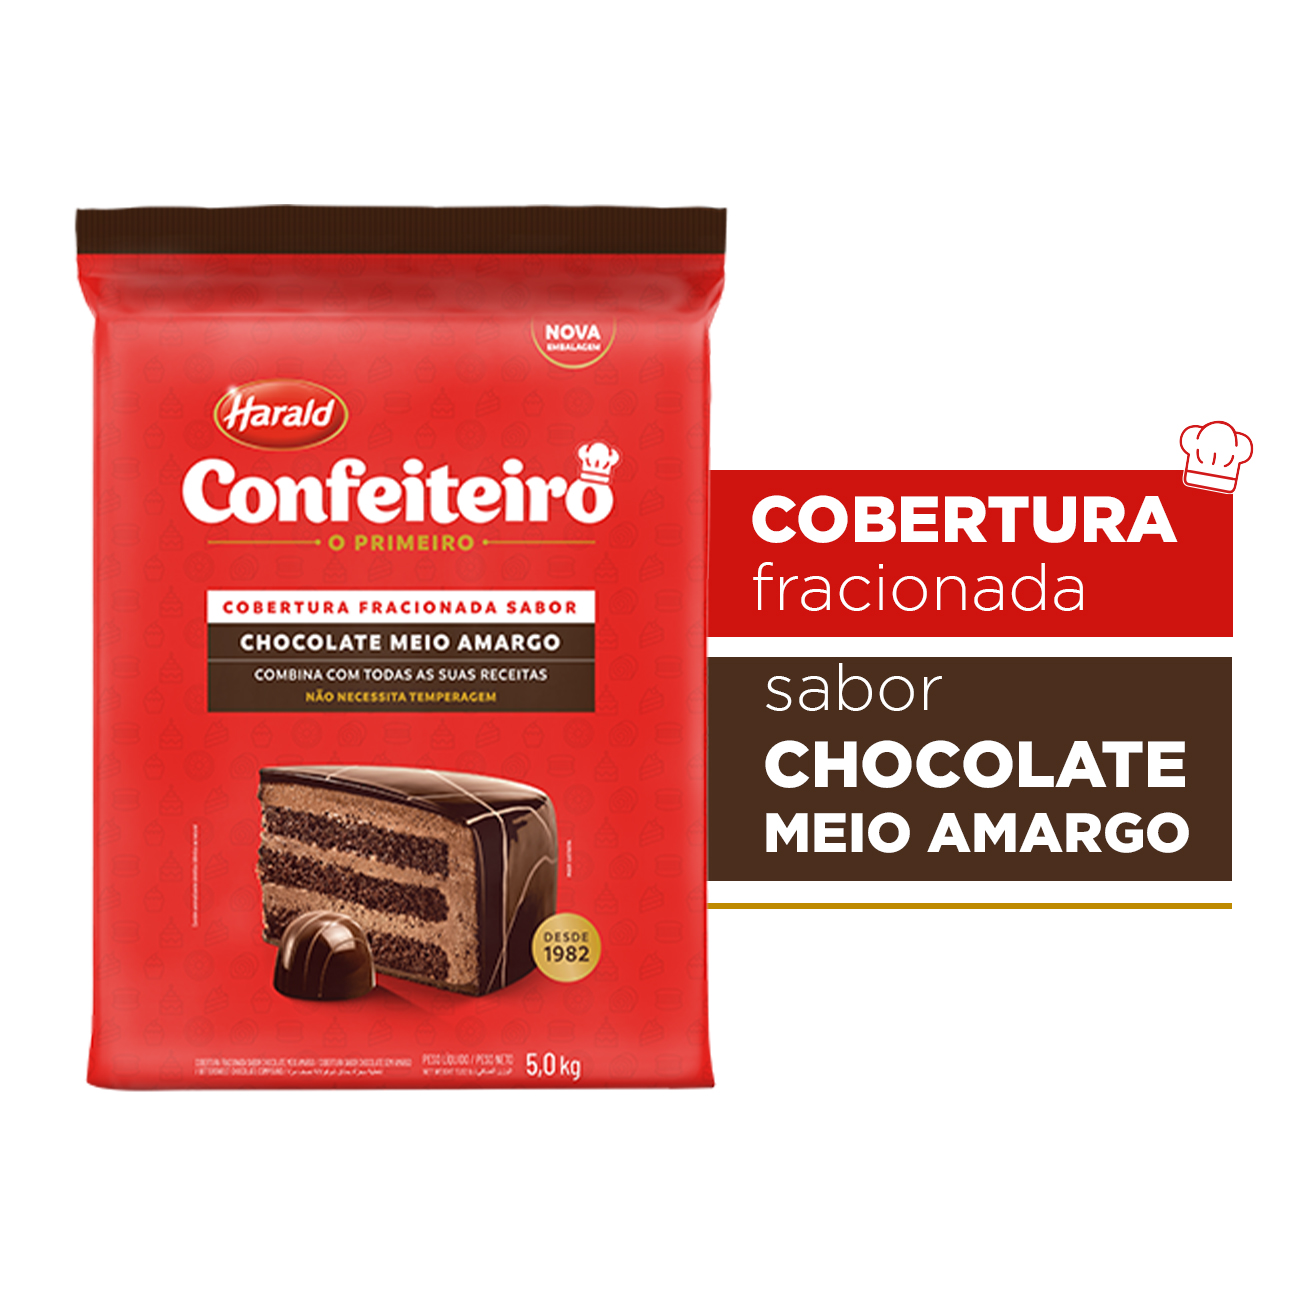 Cobertura de Chocolate em Barra Harald Confeiteiro Fracionada Meio Amargo 5kg